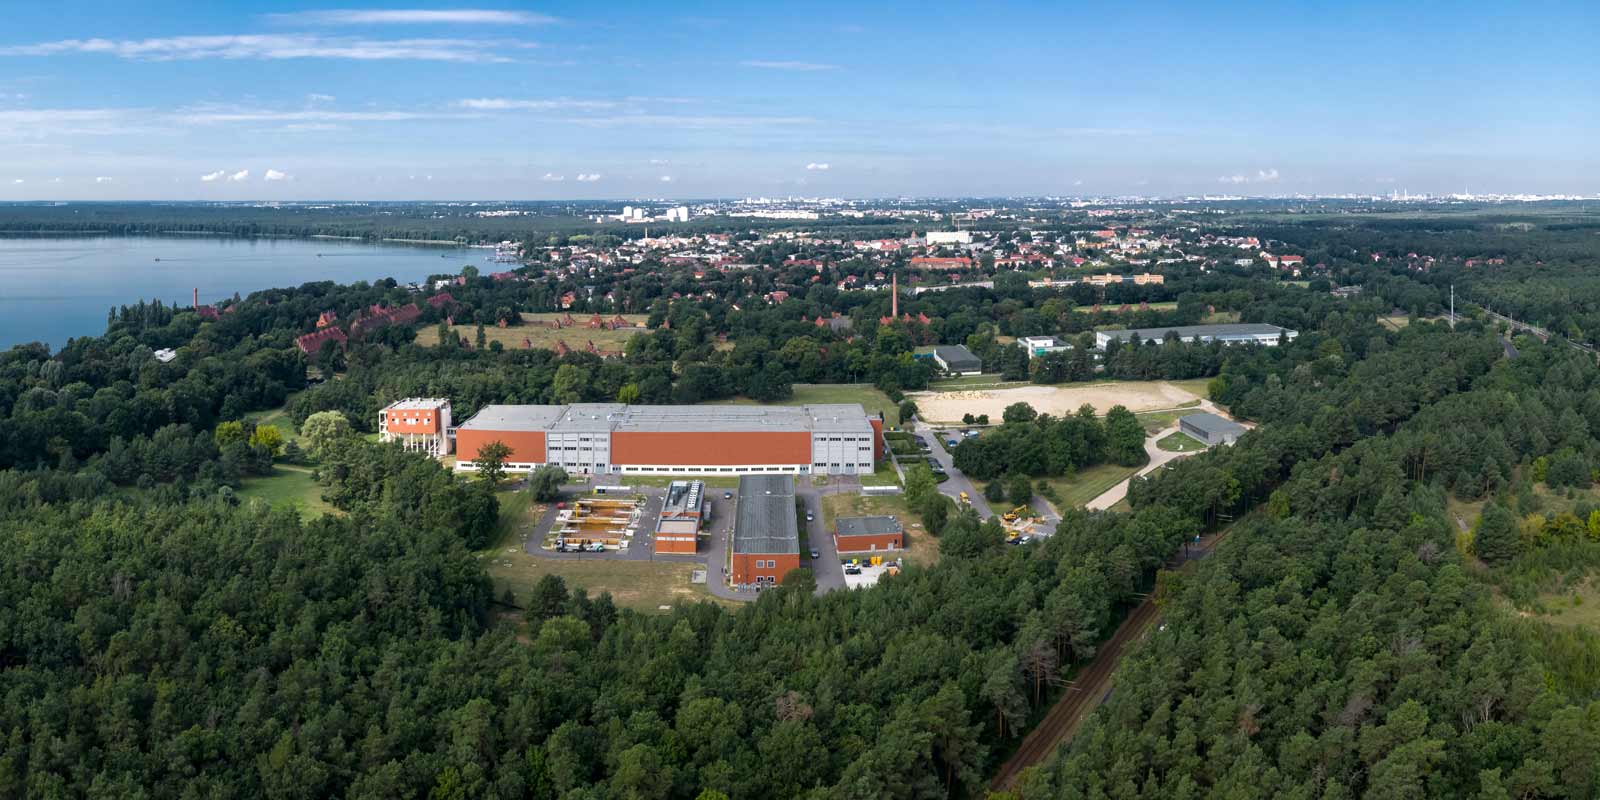 Luftbildaufnahme des Wasserwerks Friedrichshagen